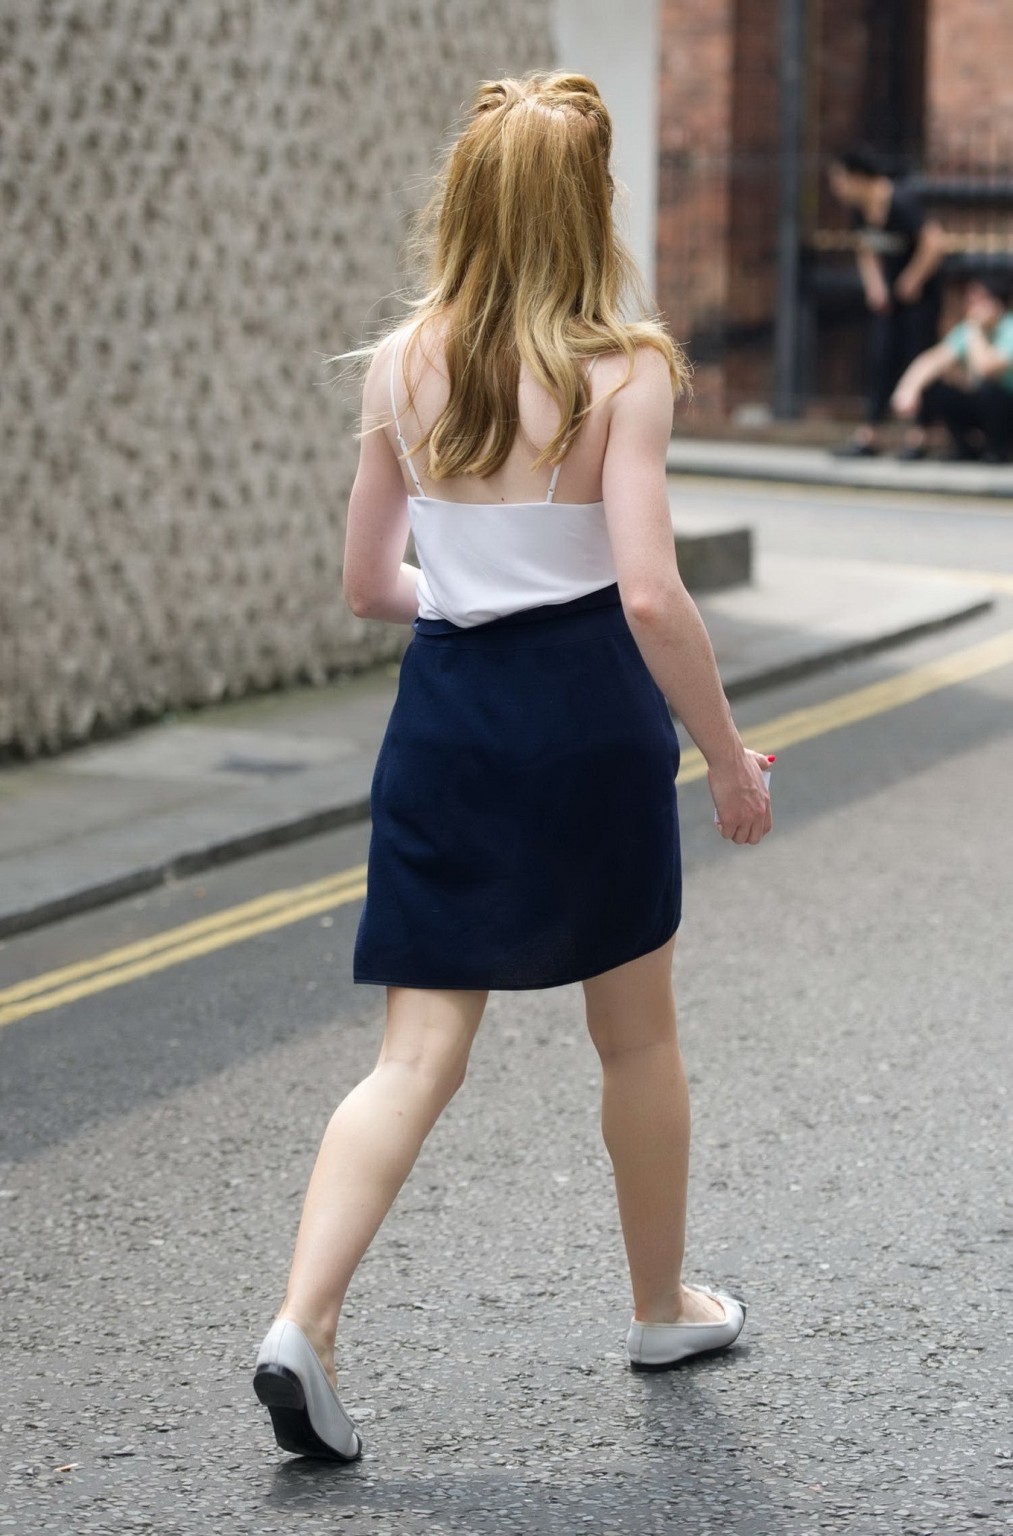 ニコラ・ロバーツがロンドンで白いシースルーのトップスと青いミニスカートを着てブラジャーをつけていない。
 #75224187